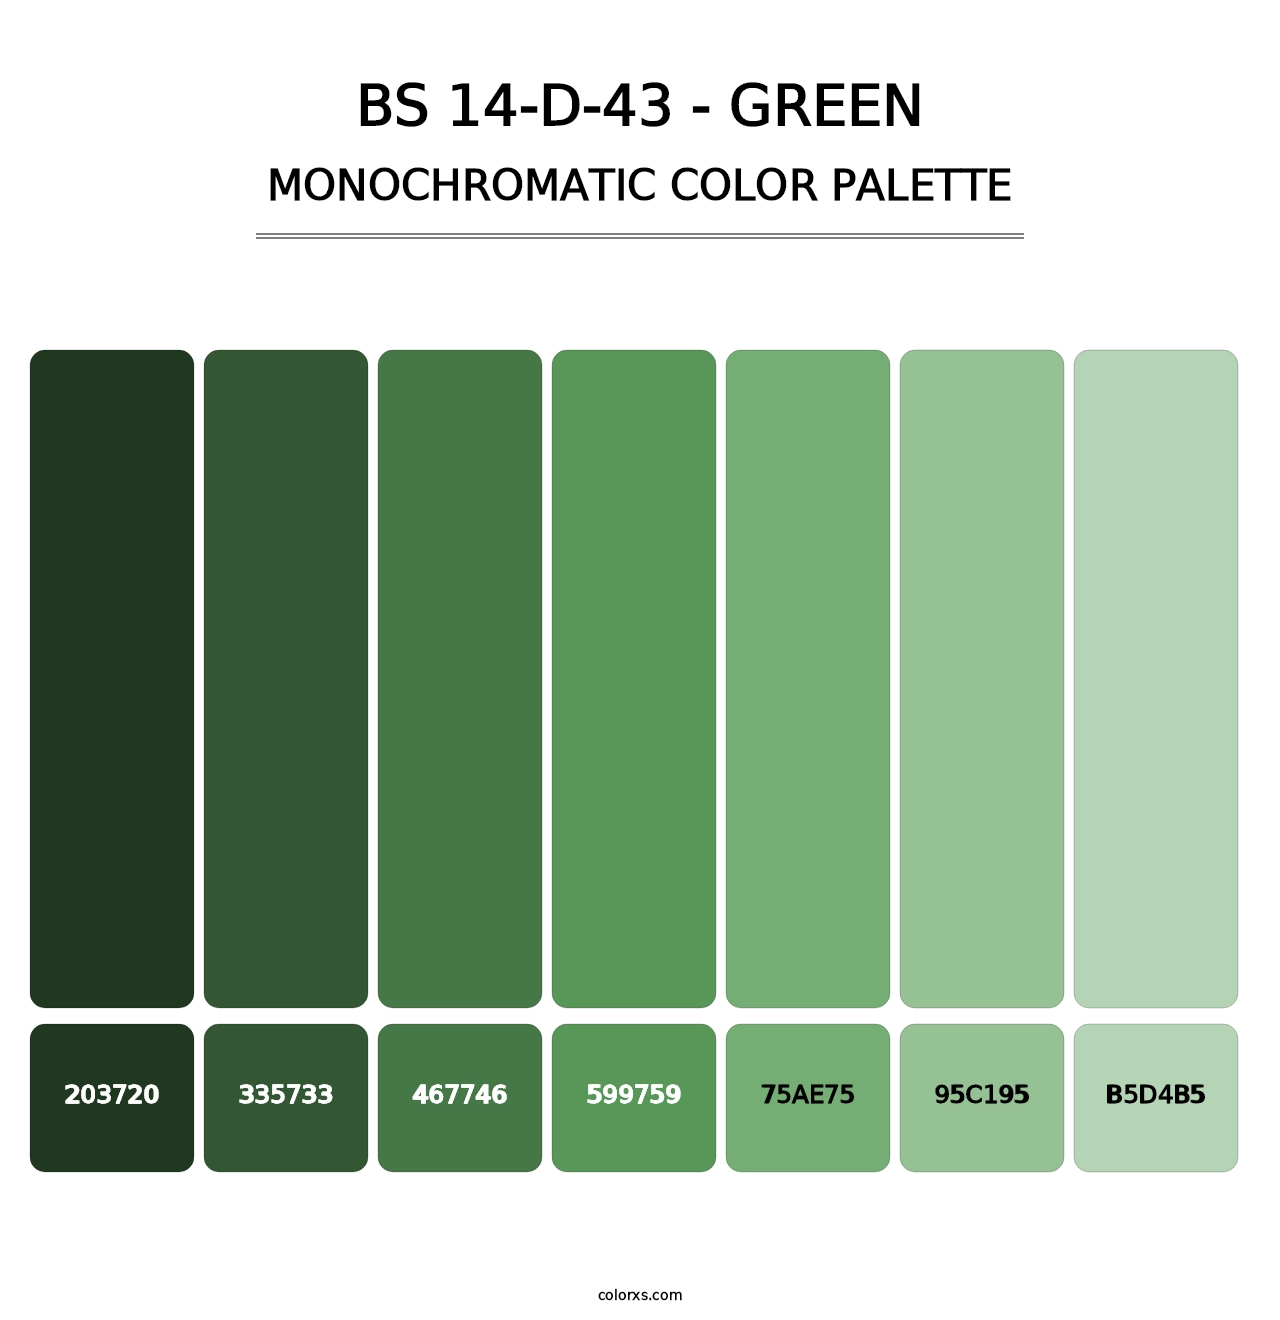 BS 14-D-43 - Green - Monochromatic Color Palette